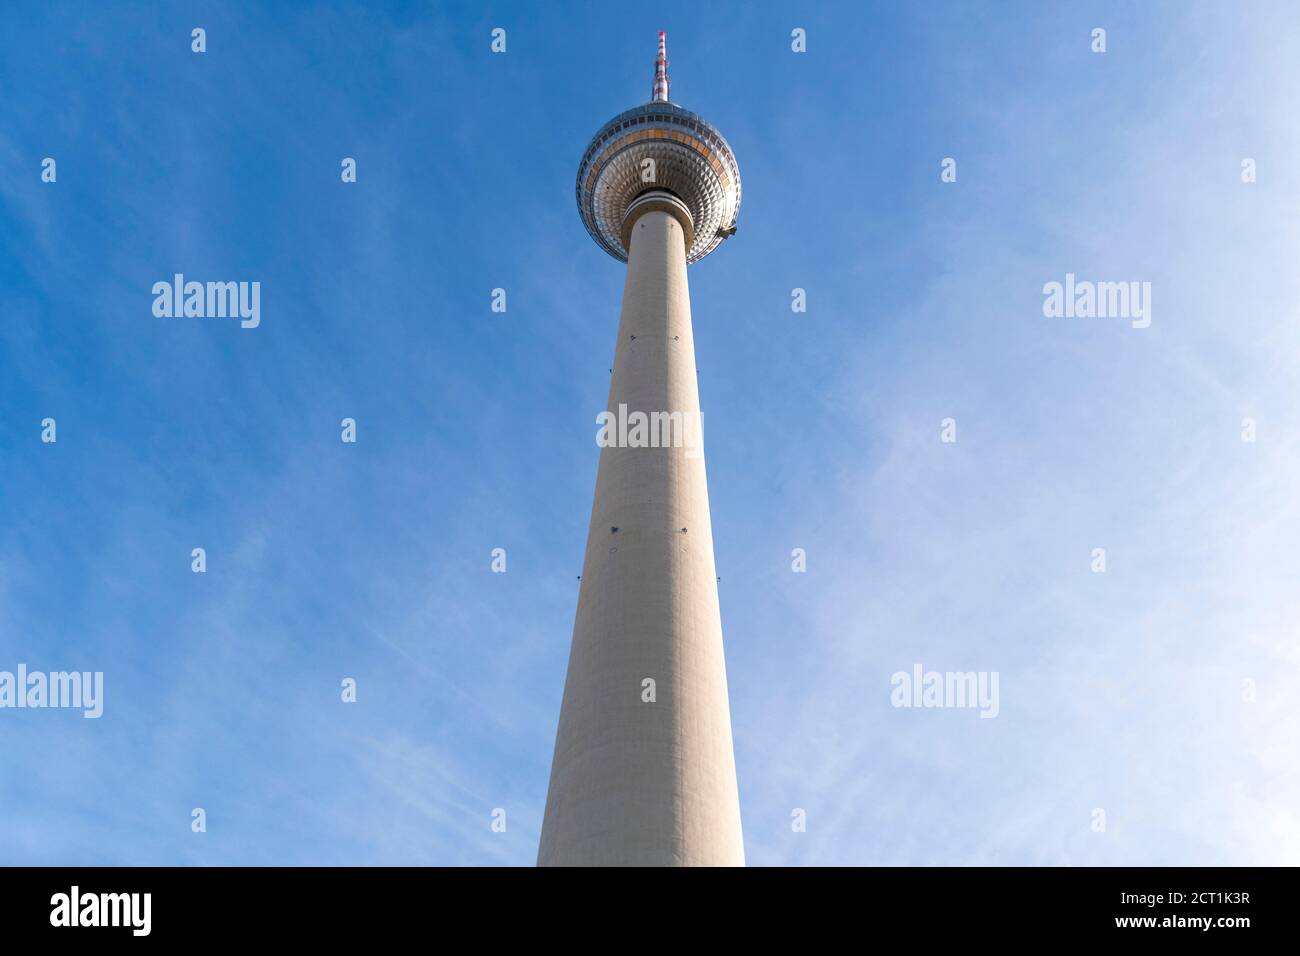 Rund um den Telespargel - Berliner Fernsehturm am Alexanderplatz, Berlin-Mitte, 19.09.2020 Foto Stock